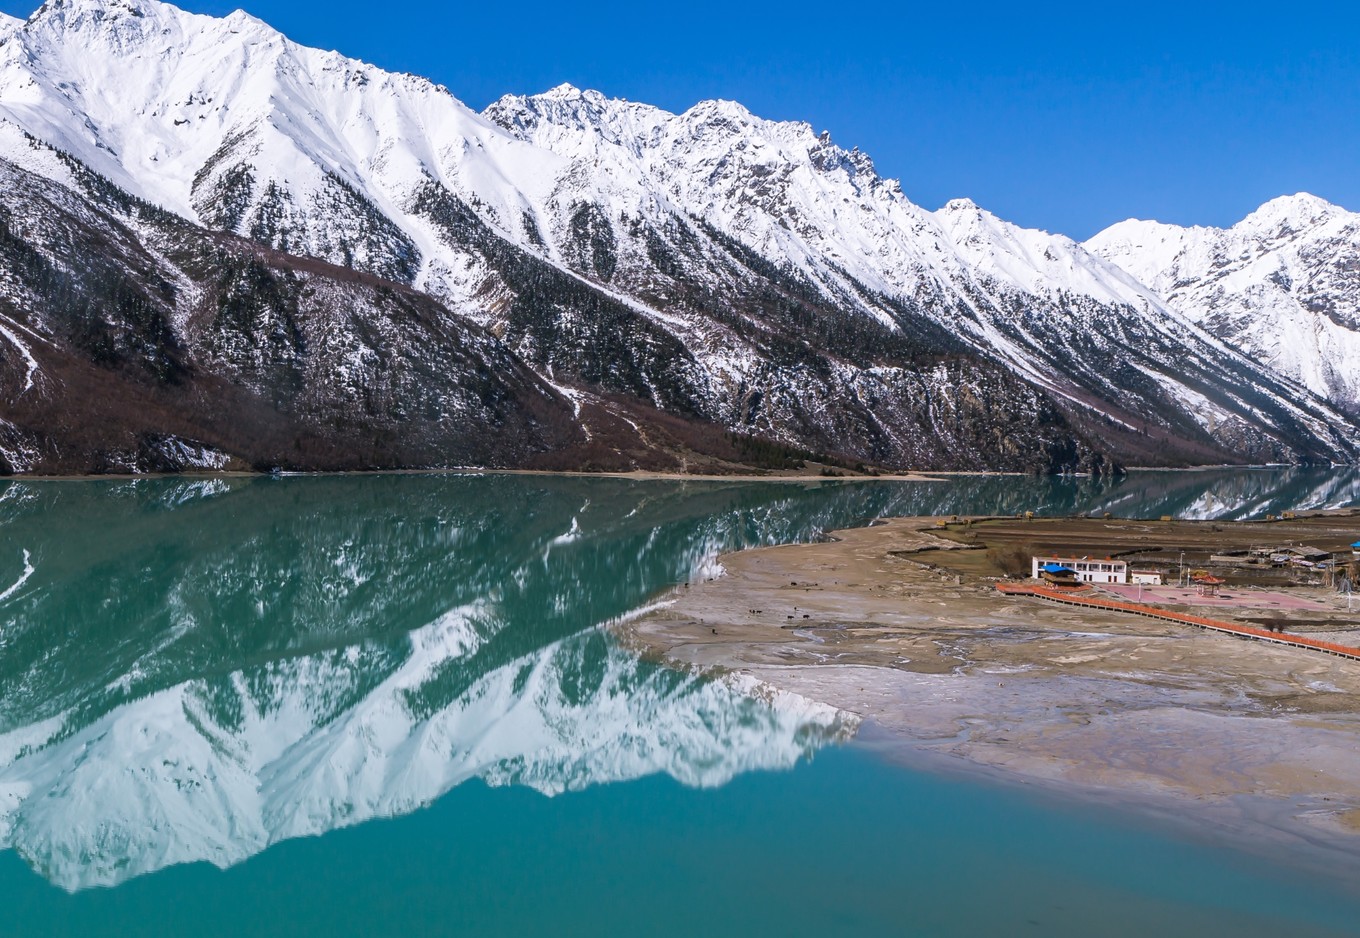 318川藏线沿途风景图片